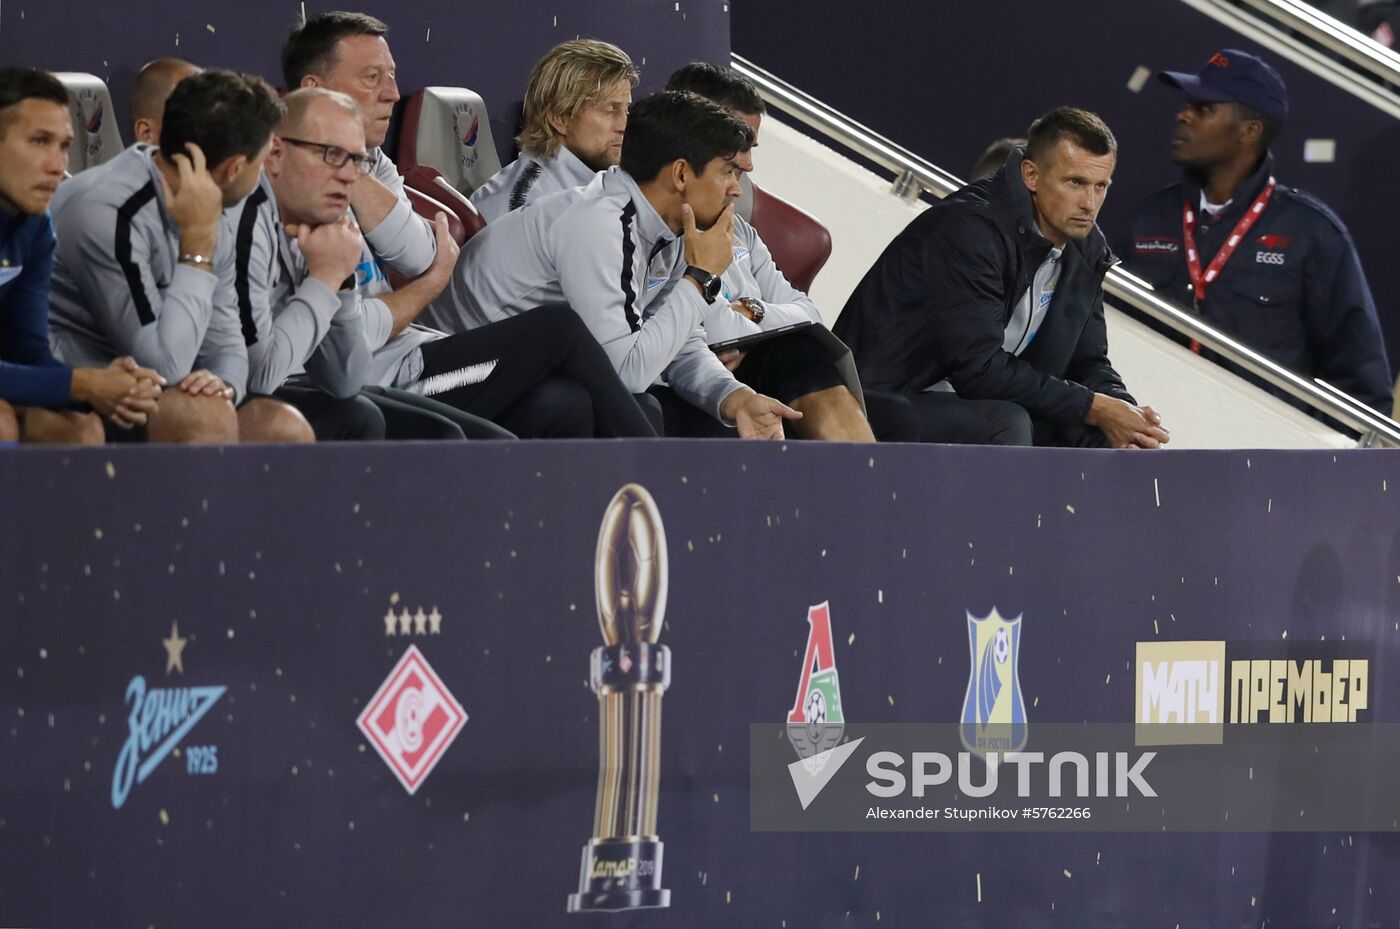 Qatar Soccer Zenit - Spartak